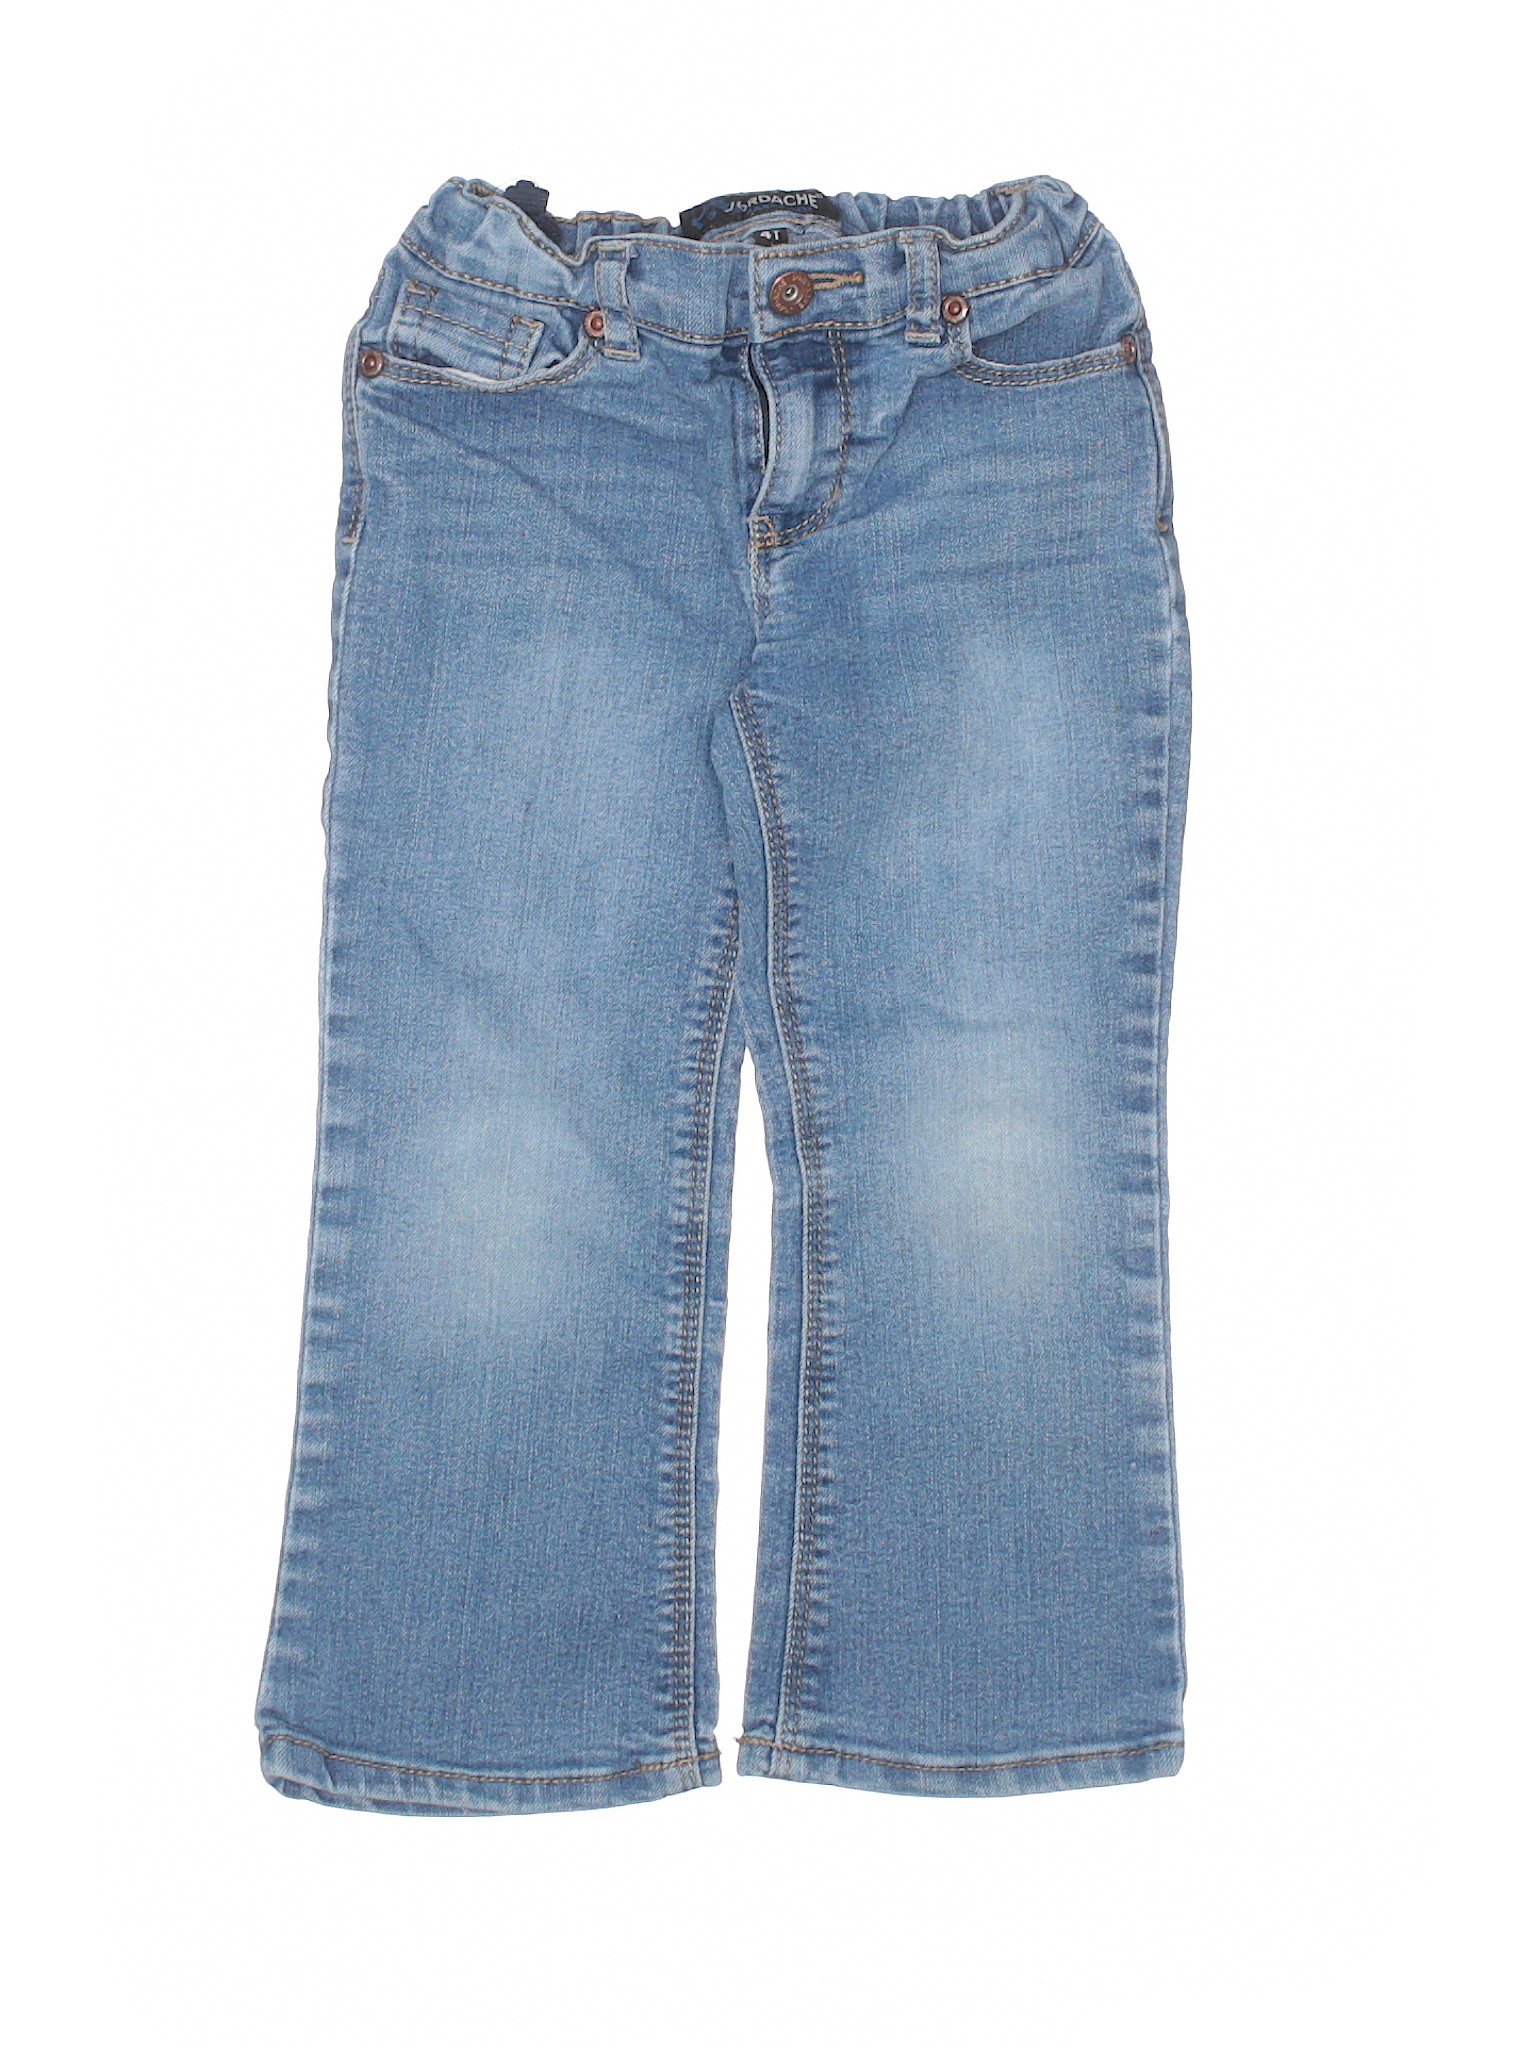 Jordache Girls Blue Jeans 4T | eBay